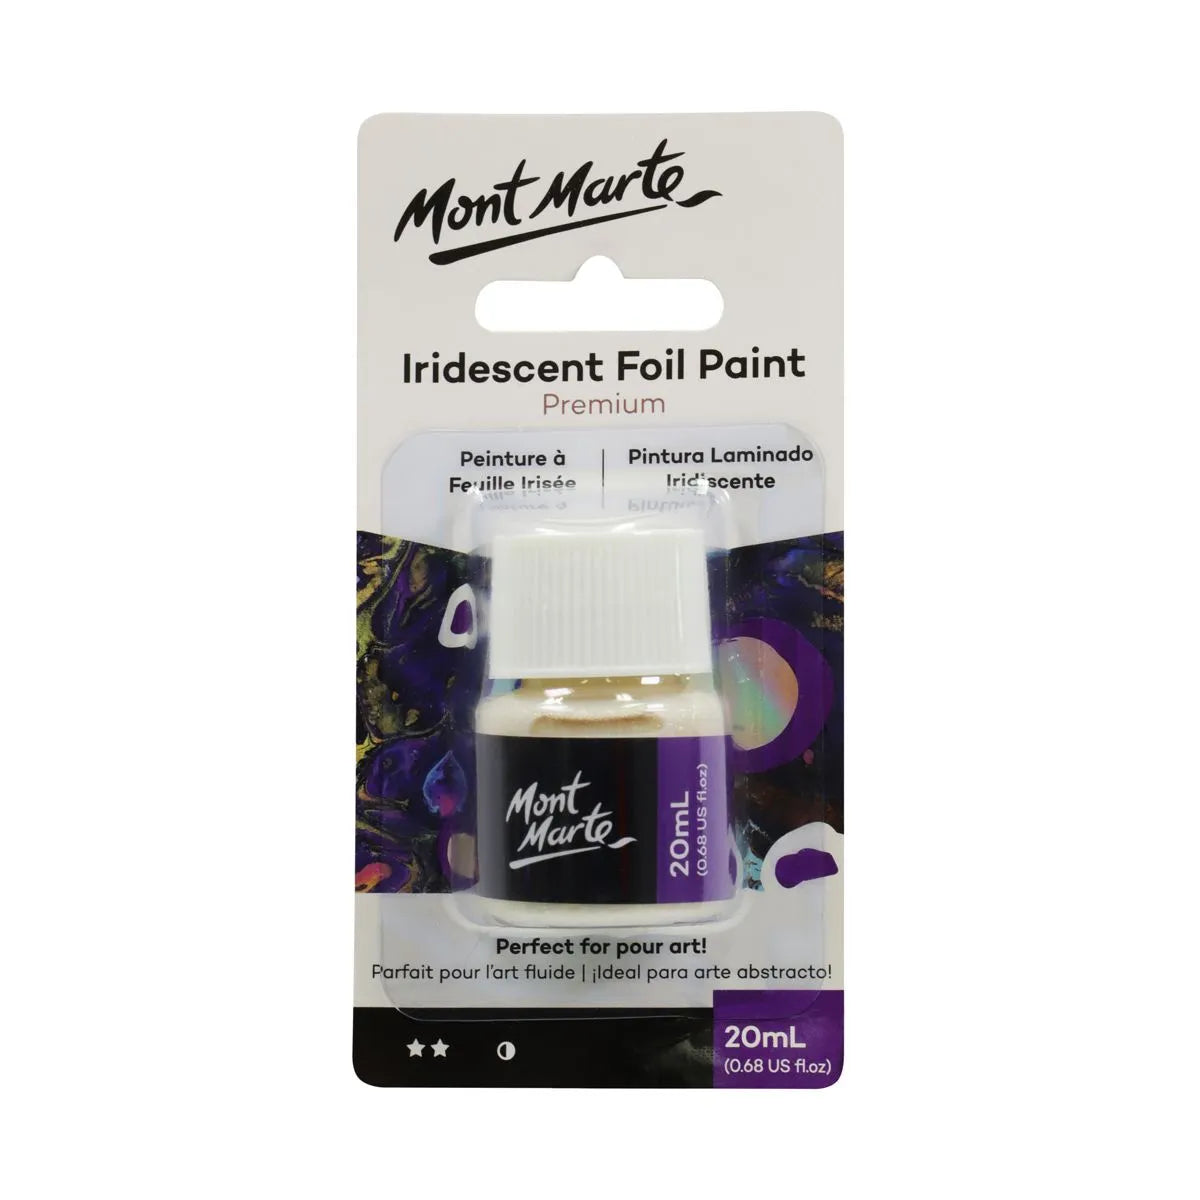 Mont Marte Premium Iridescent Foil Paint 20ml